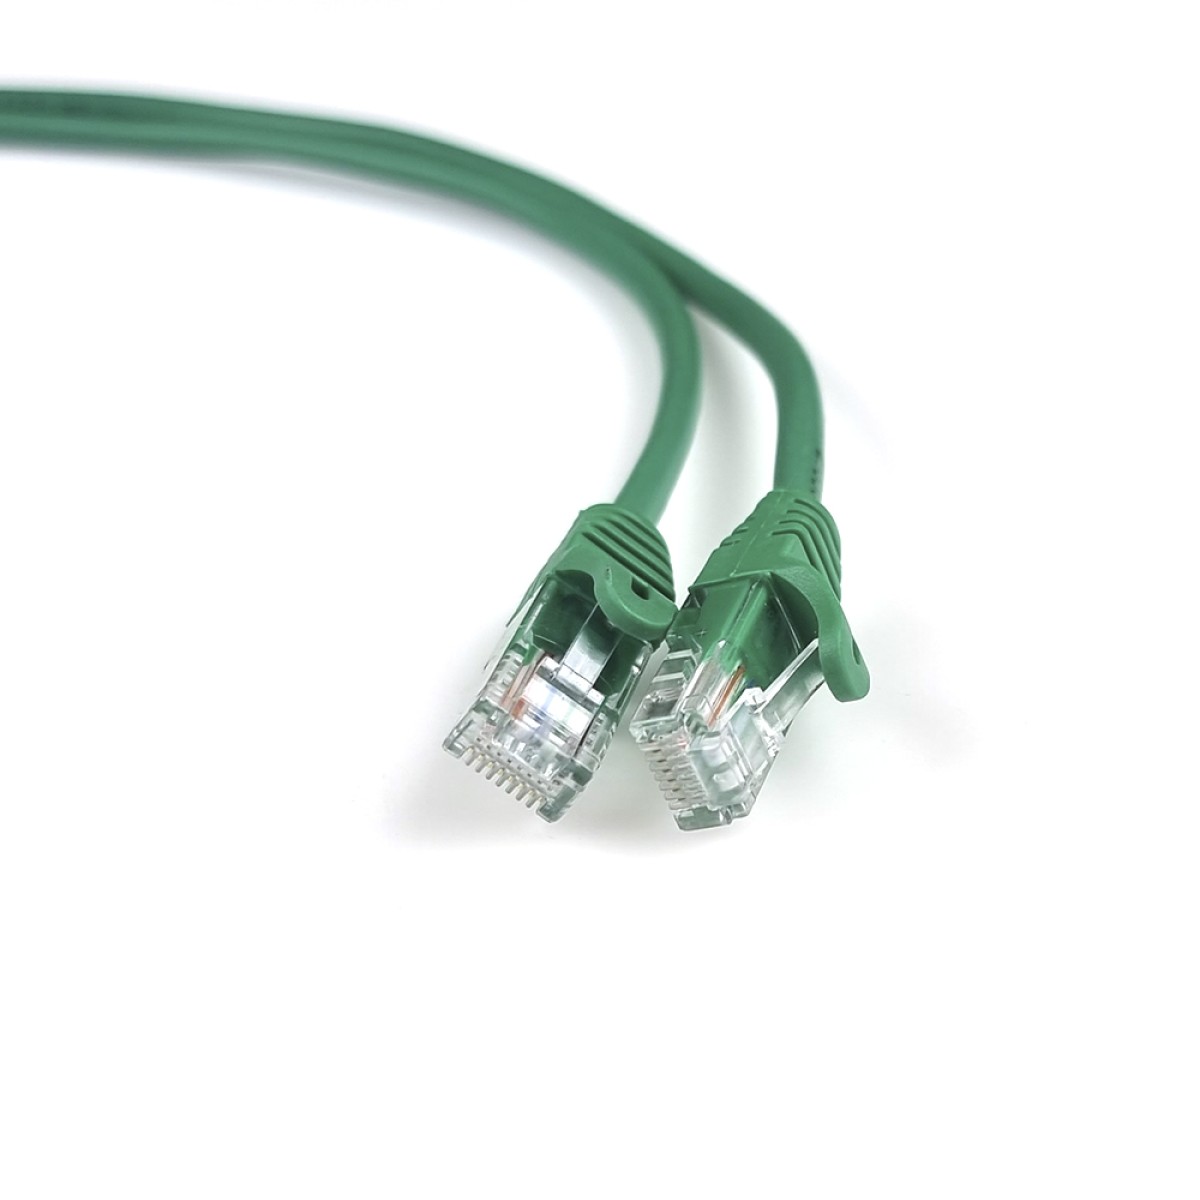 Інтернет кабель RJ45 UTP литий зелений 2м кат. 5Е 98_98.jpg - фото 3